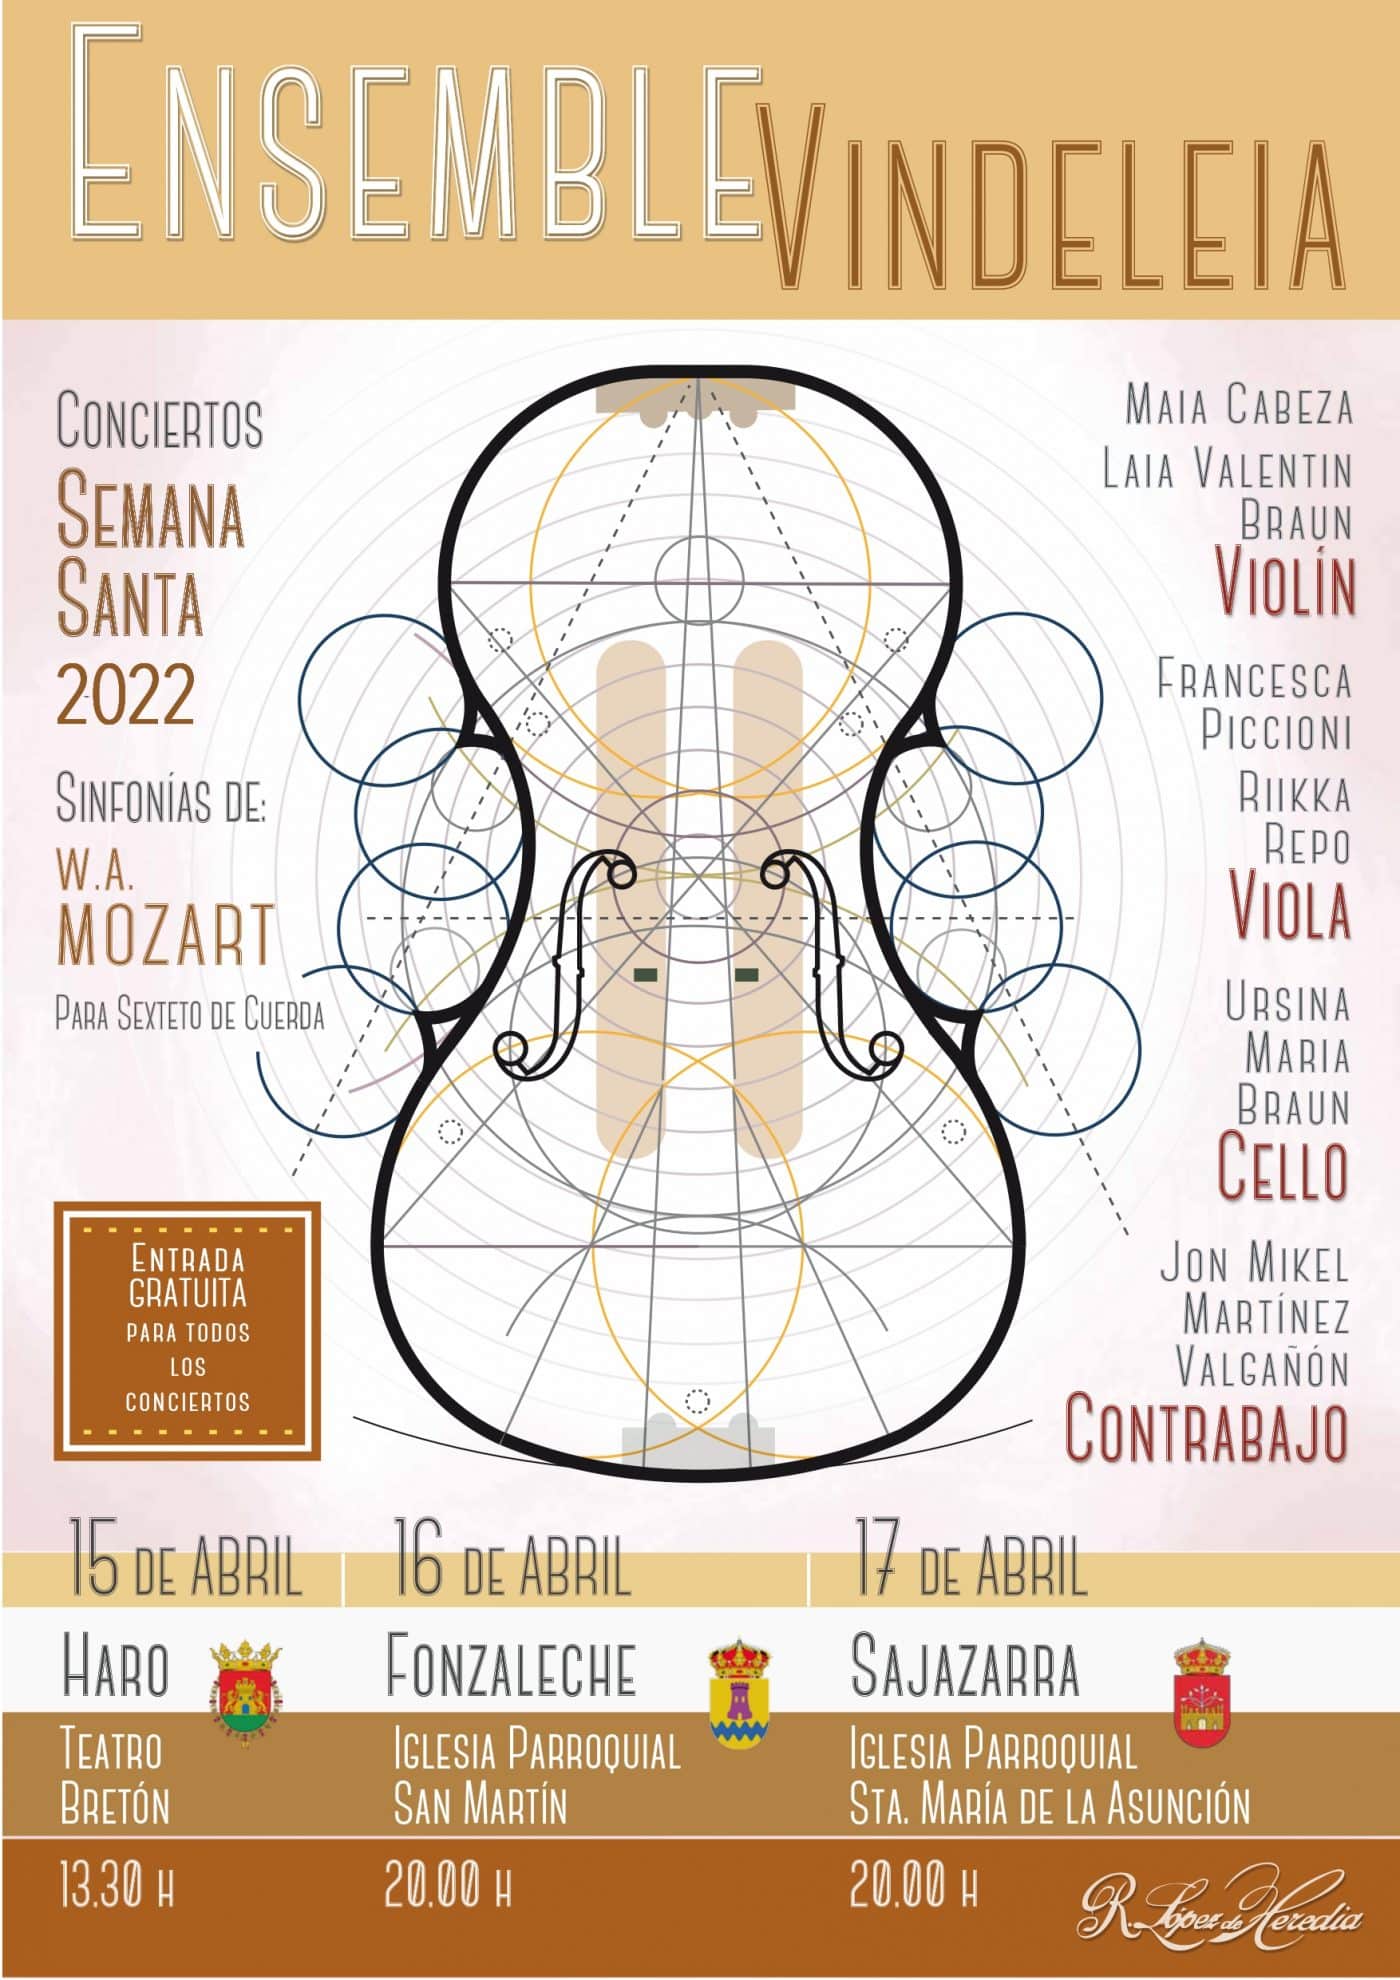 La música de Ensemble Vindeleia retorna a la comarca de Haro 2